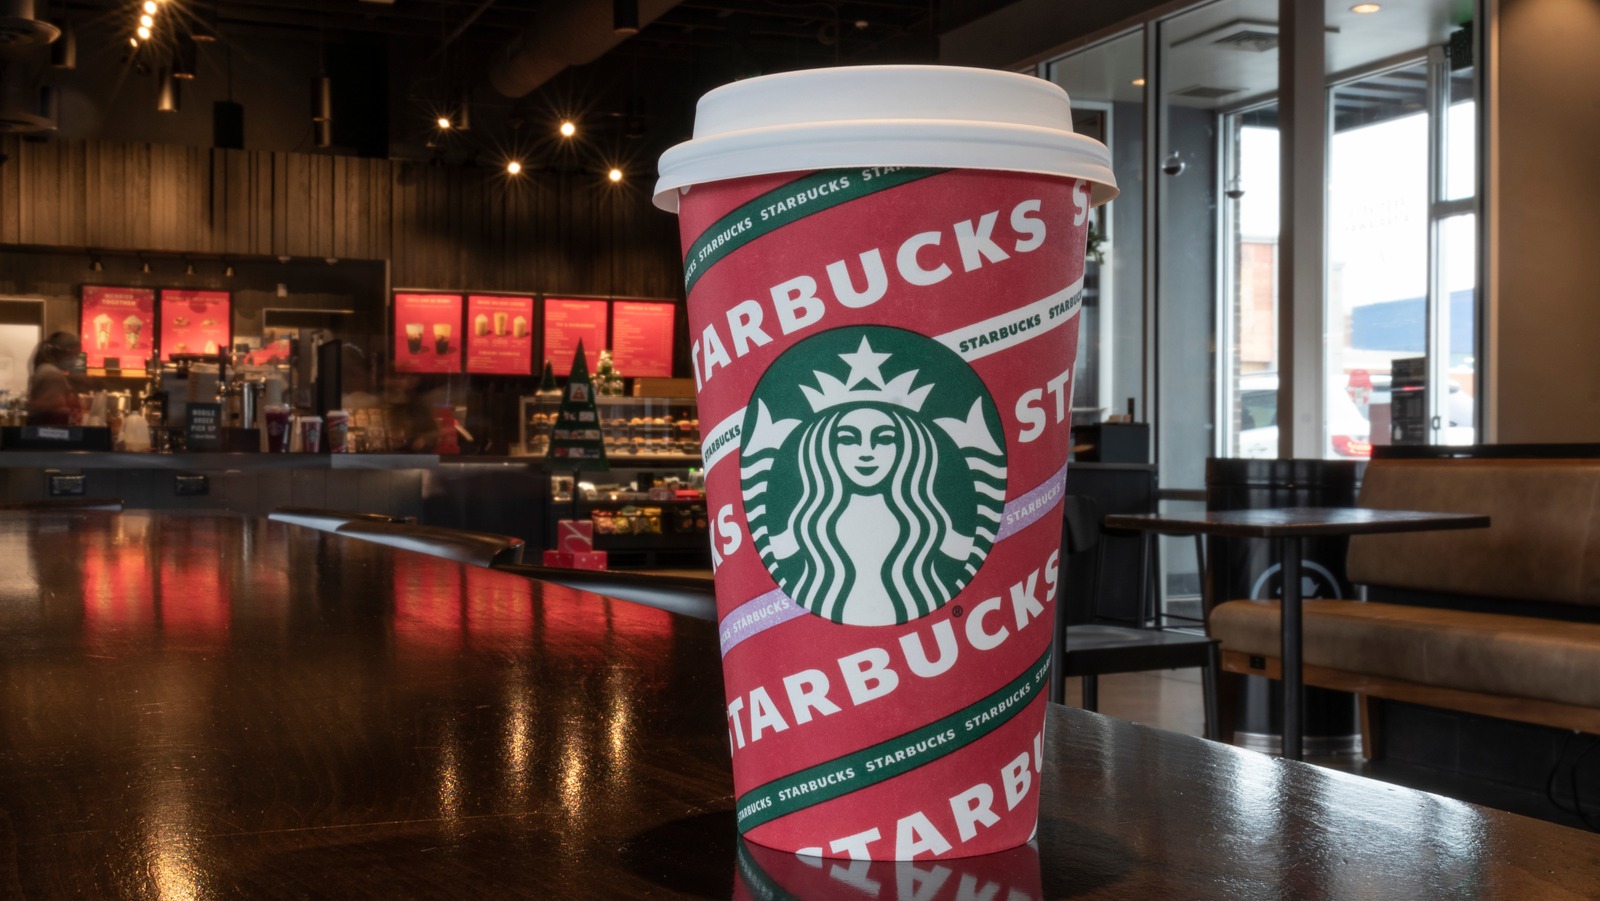 Starbucks Japan Holiday 2023 Red Mug